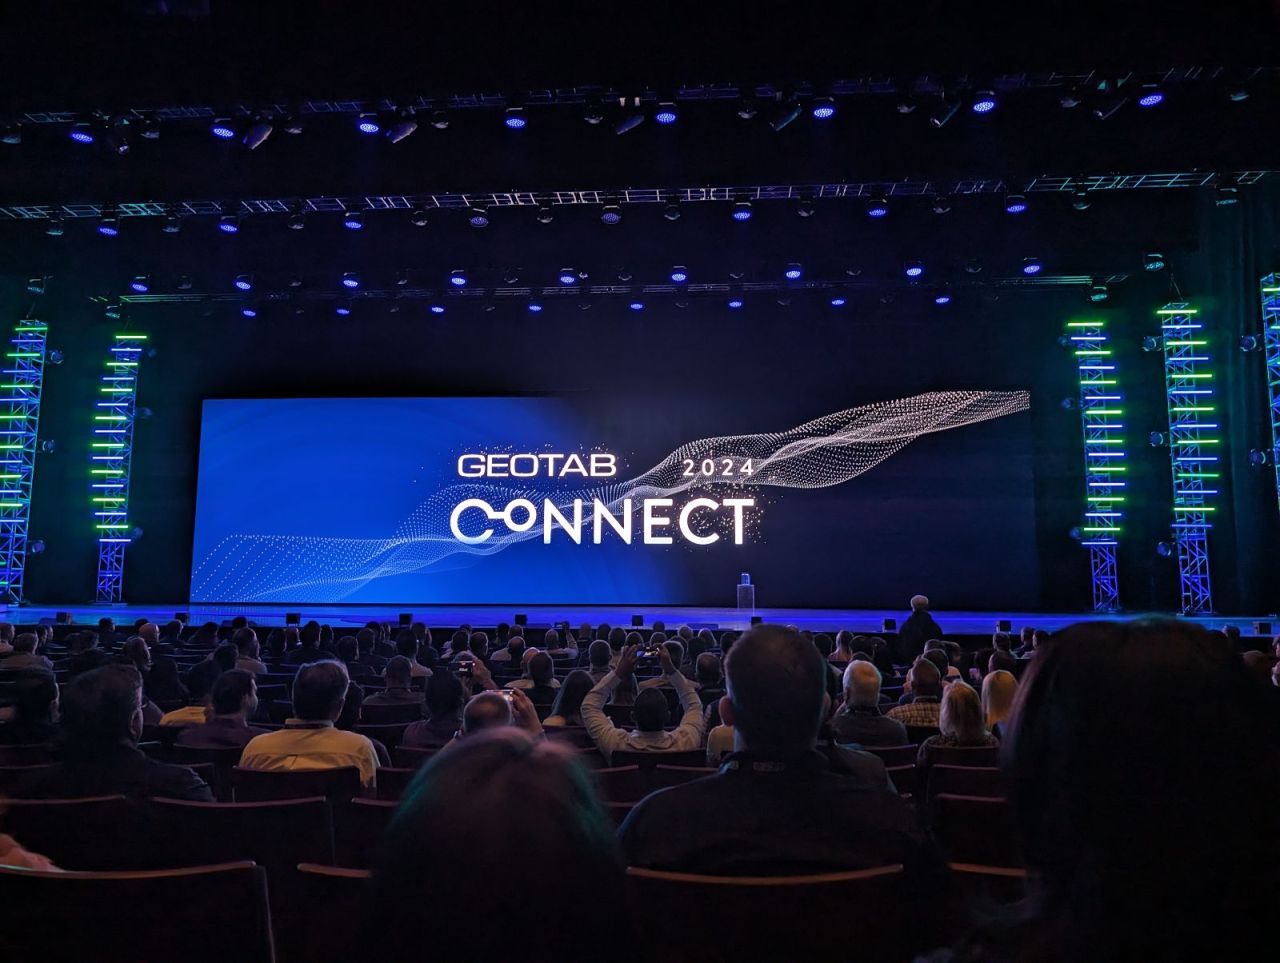 Palco do Connect mostrando o telão com a logo